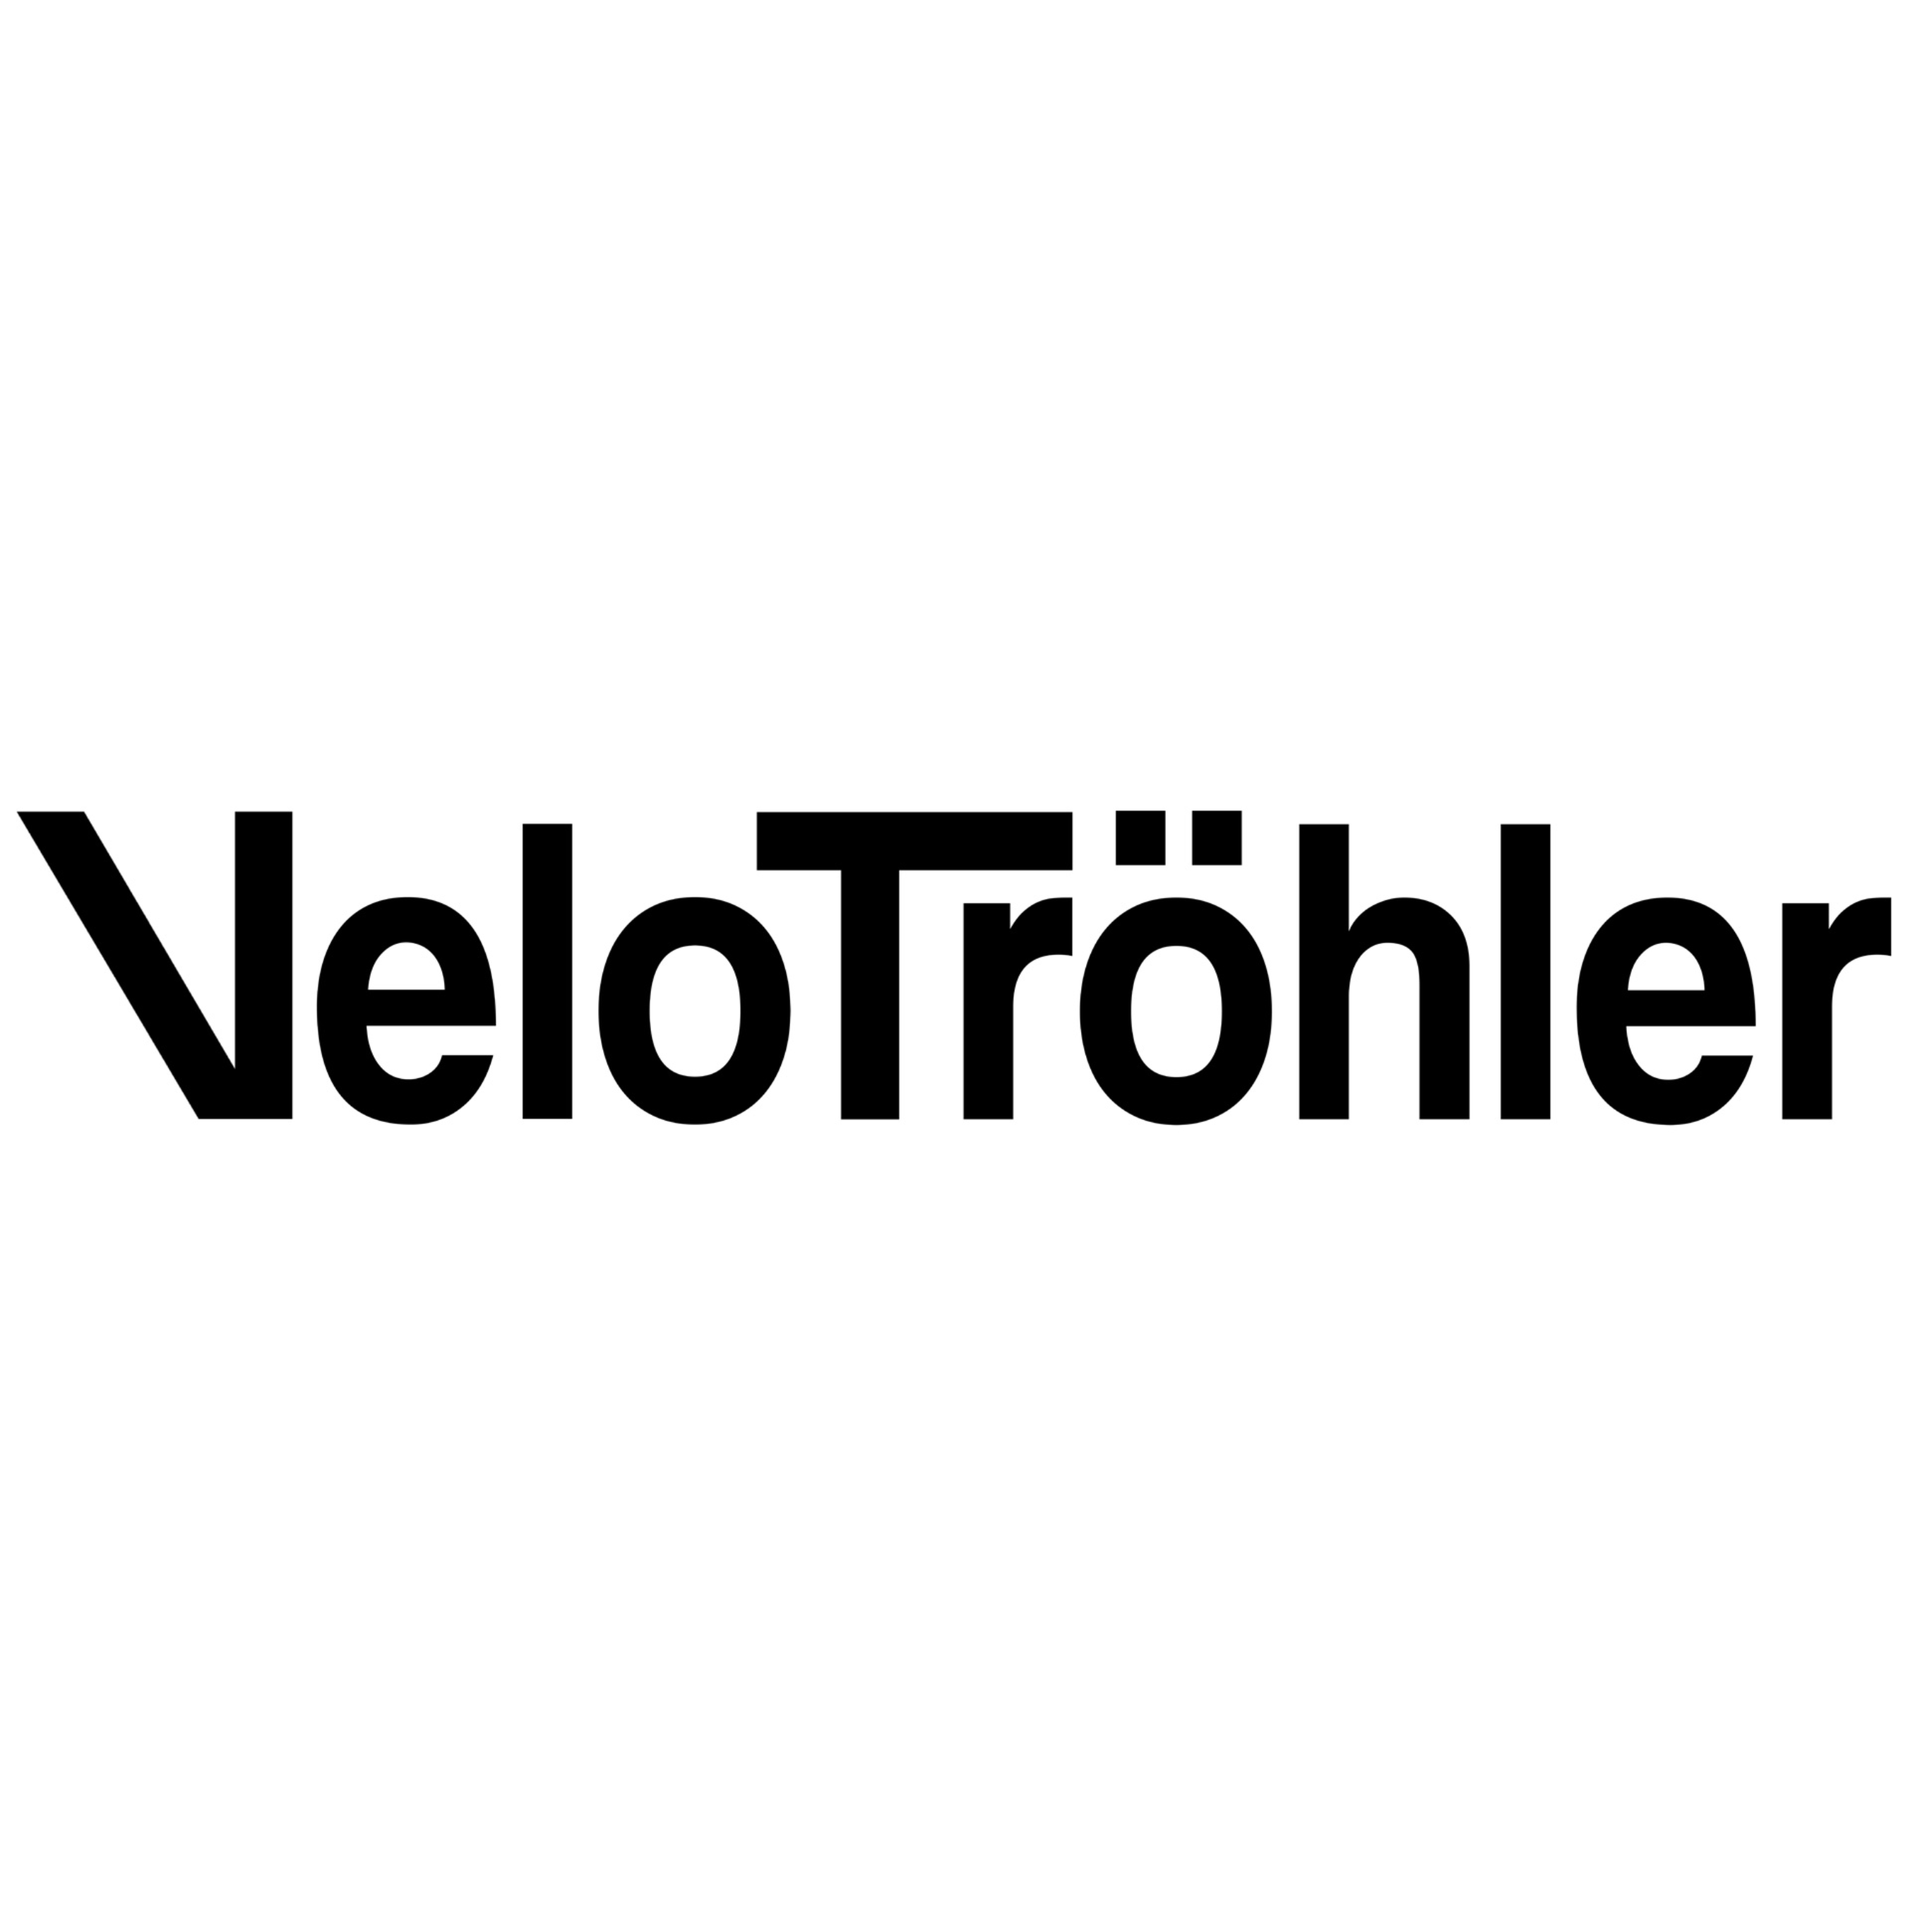 Tröhler Velo Sport Logo